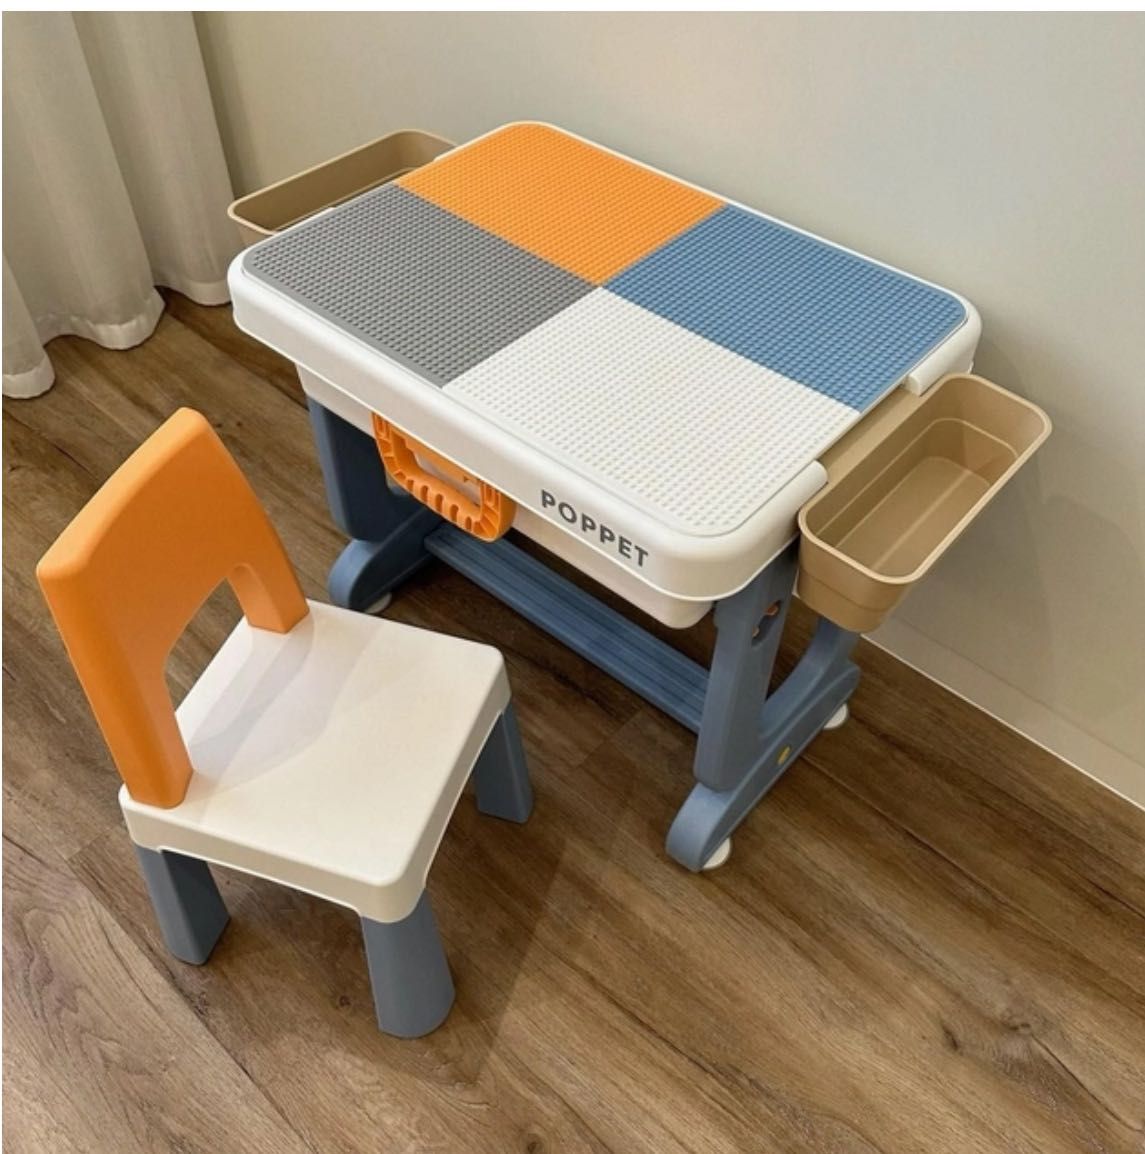 Стіл та стілець  дитячі з лего дошкою  від Poppet Топ стіл